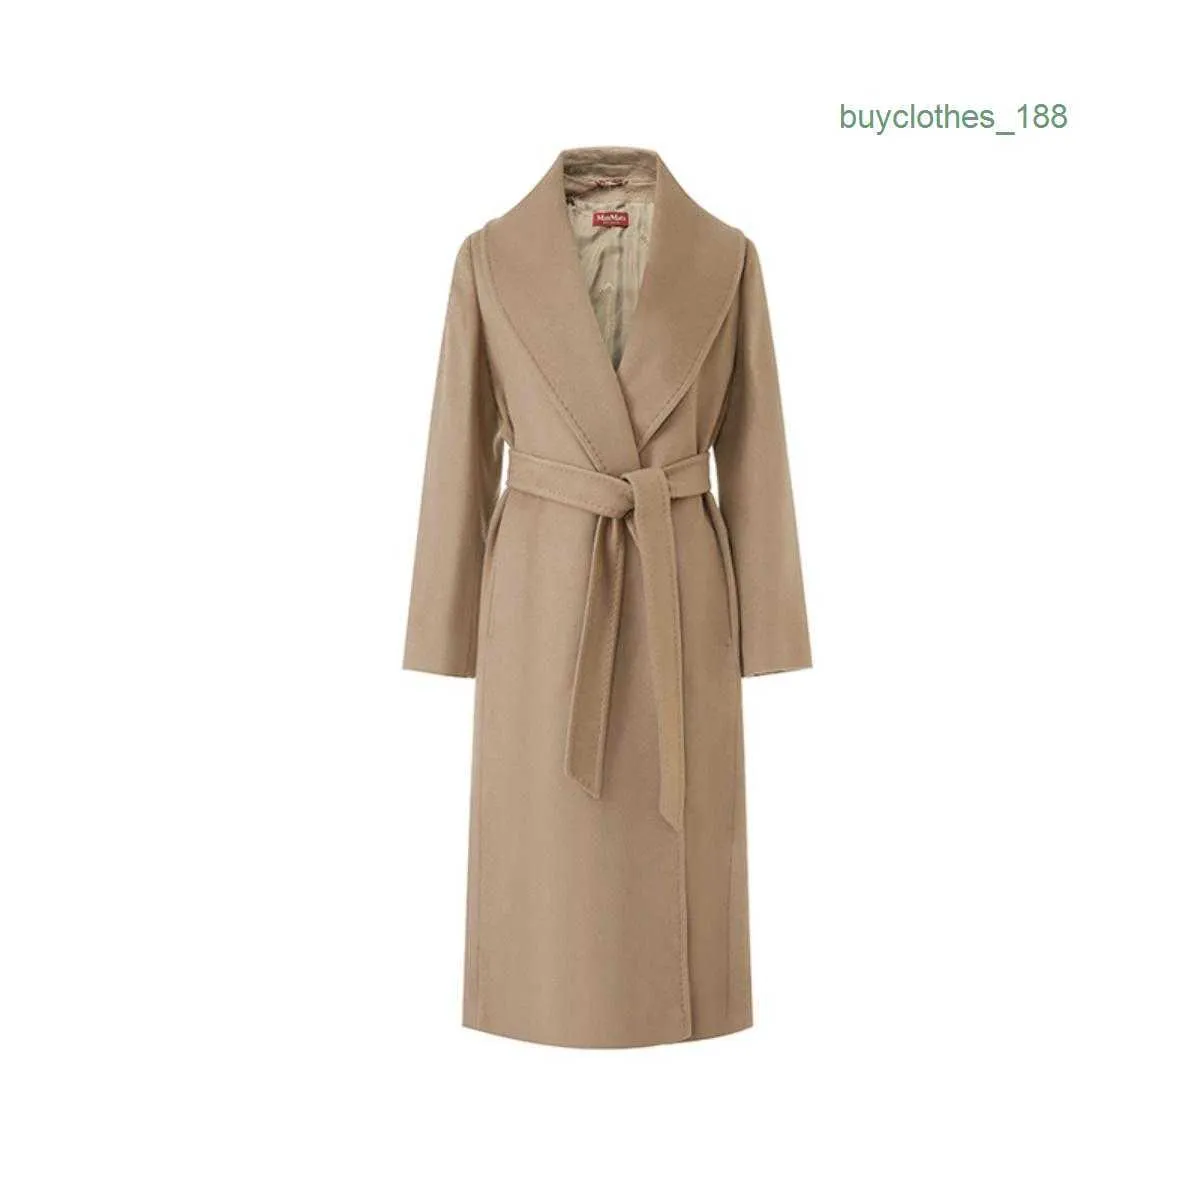 Kadın trençkotları lüks moda ceket kadın yün harmanları tasarımcı ceket Japon ve Koreli rüzgar uzun kaşmir palto yıpranma maxmaras 0pyx